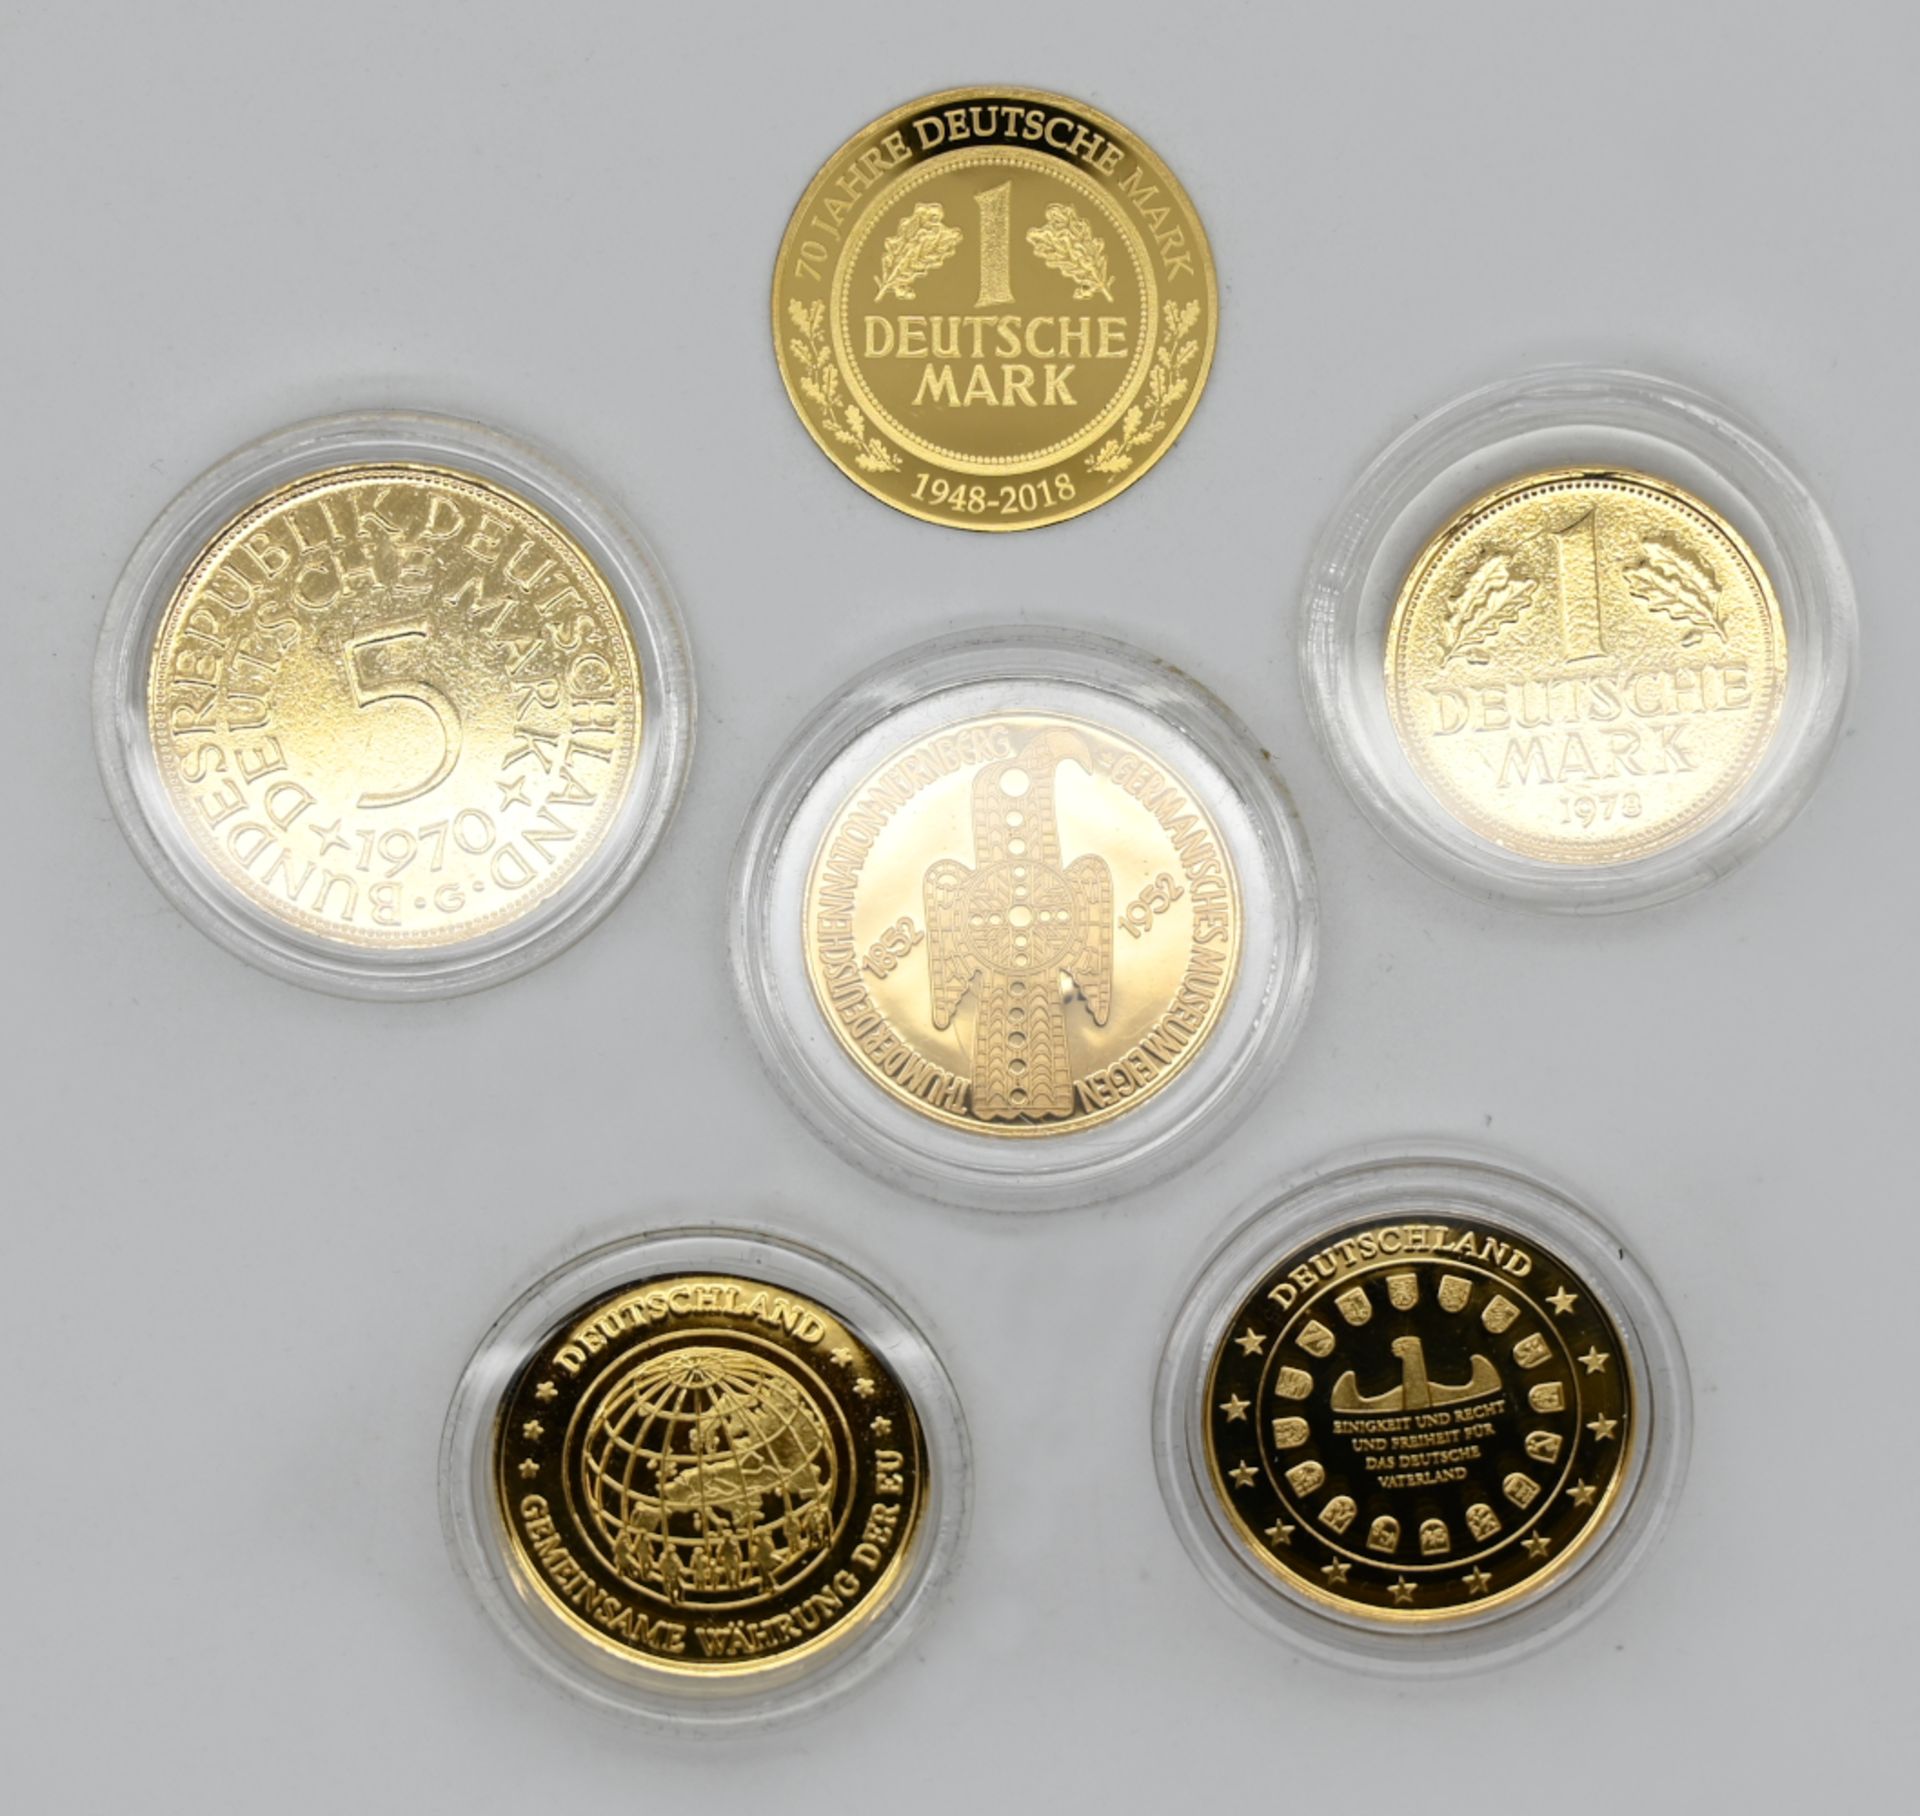 1 Konv. Münzen/ Medaillen GG 8ct. Metall u.a. Deutschland "1 Deutsche Mark" Sonderedition u.a.